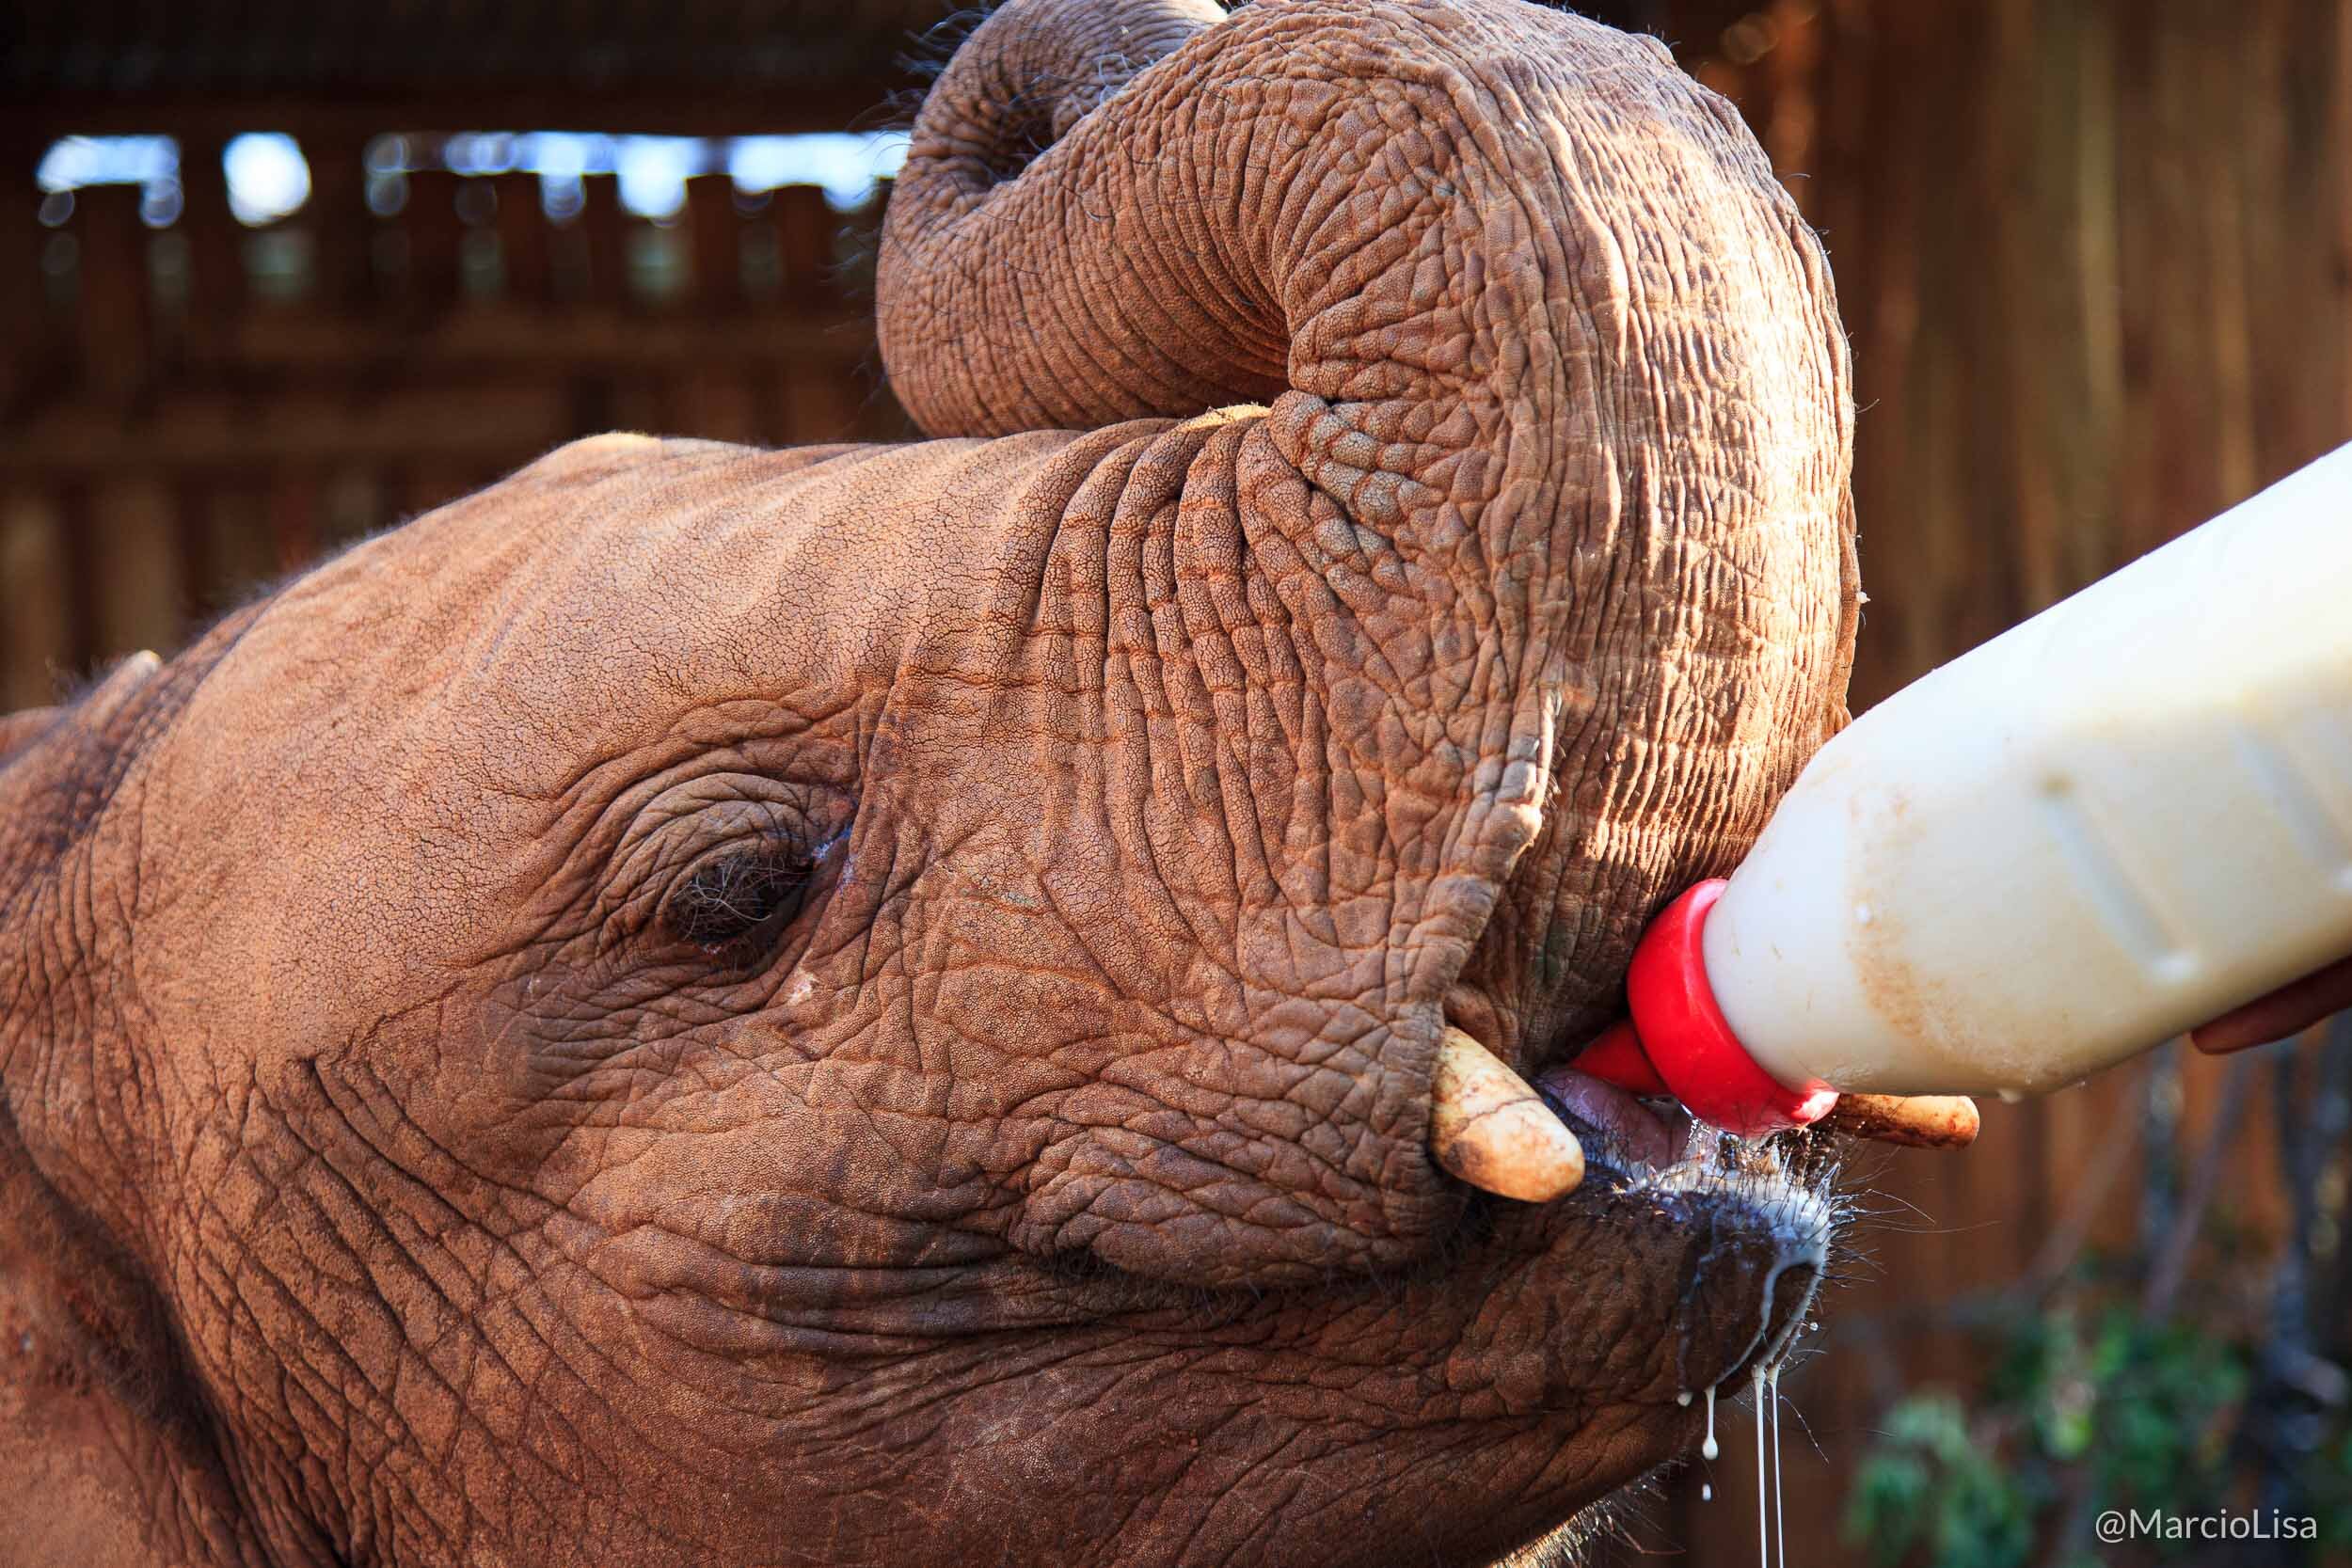 Elefante órfão sendo alimentado no santuário David Sheldrick em Nairobi, Quenia